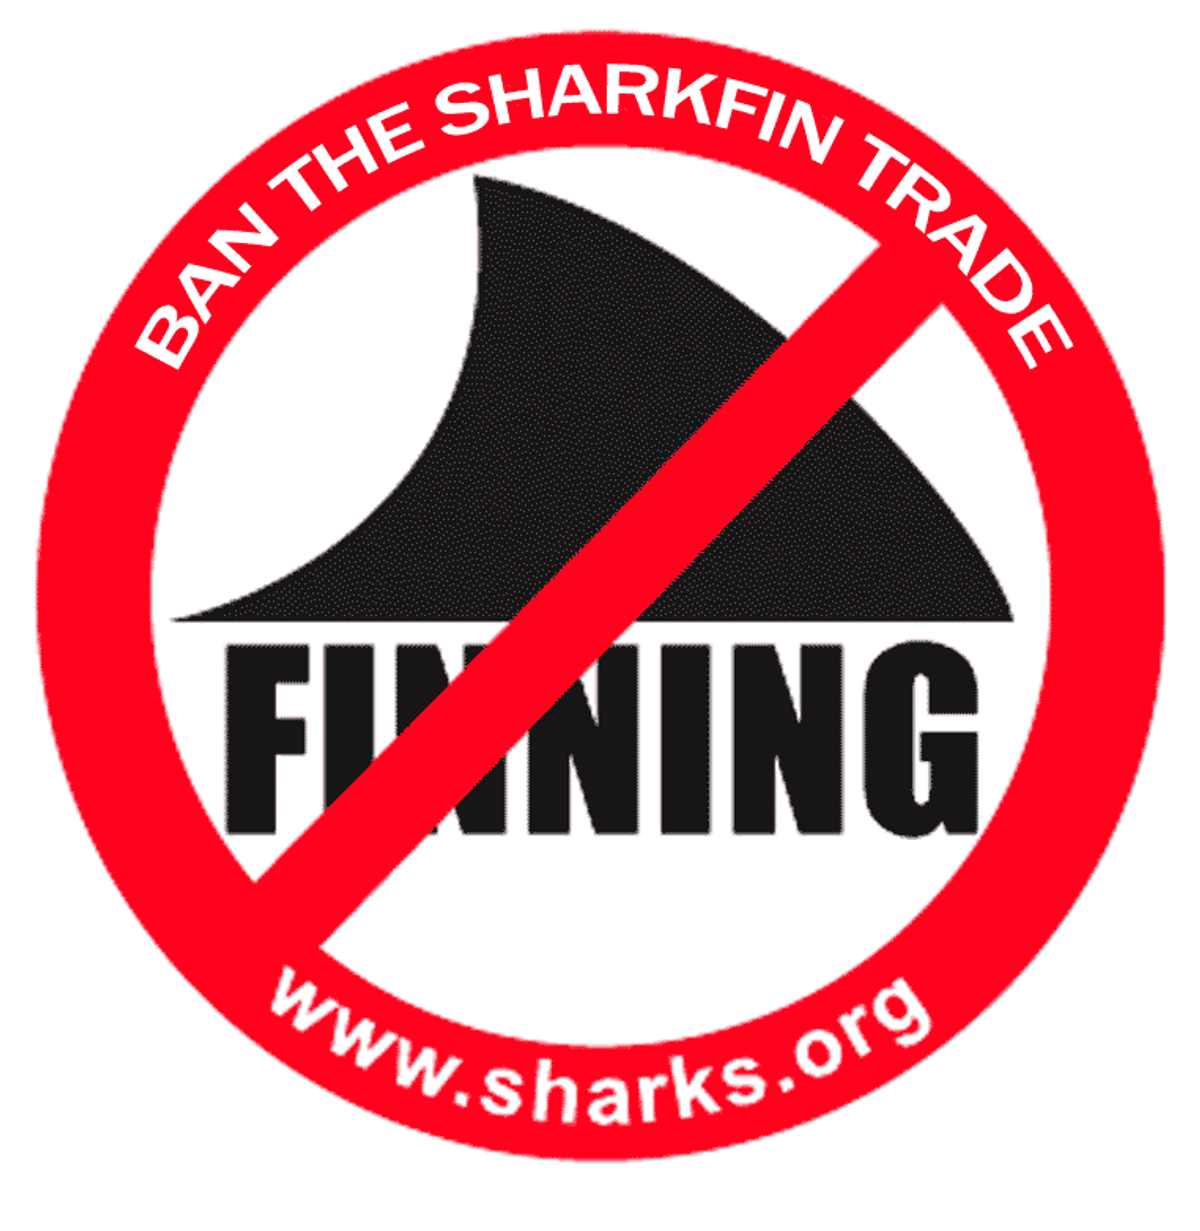 UPS Bans Shark Fin Shipments